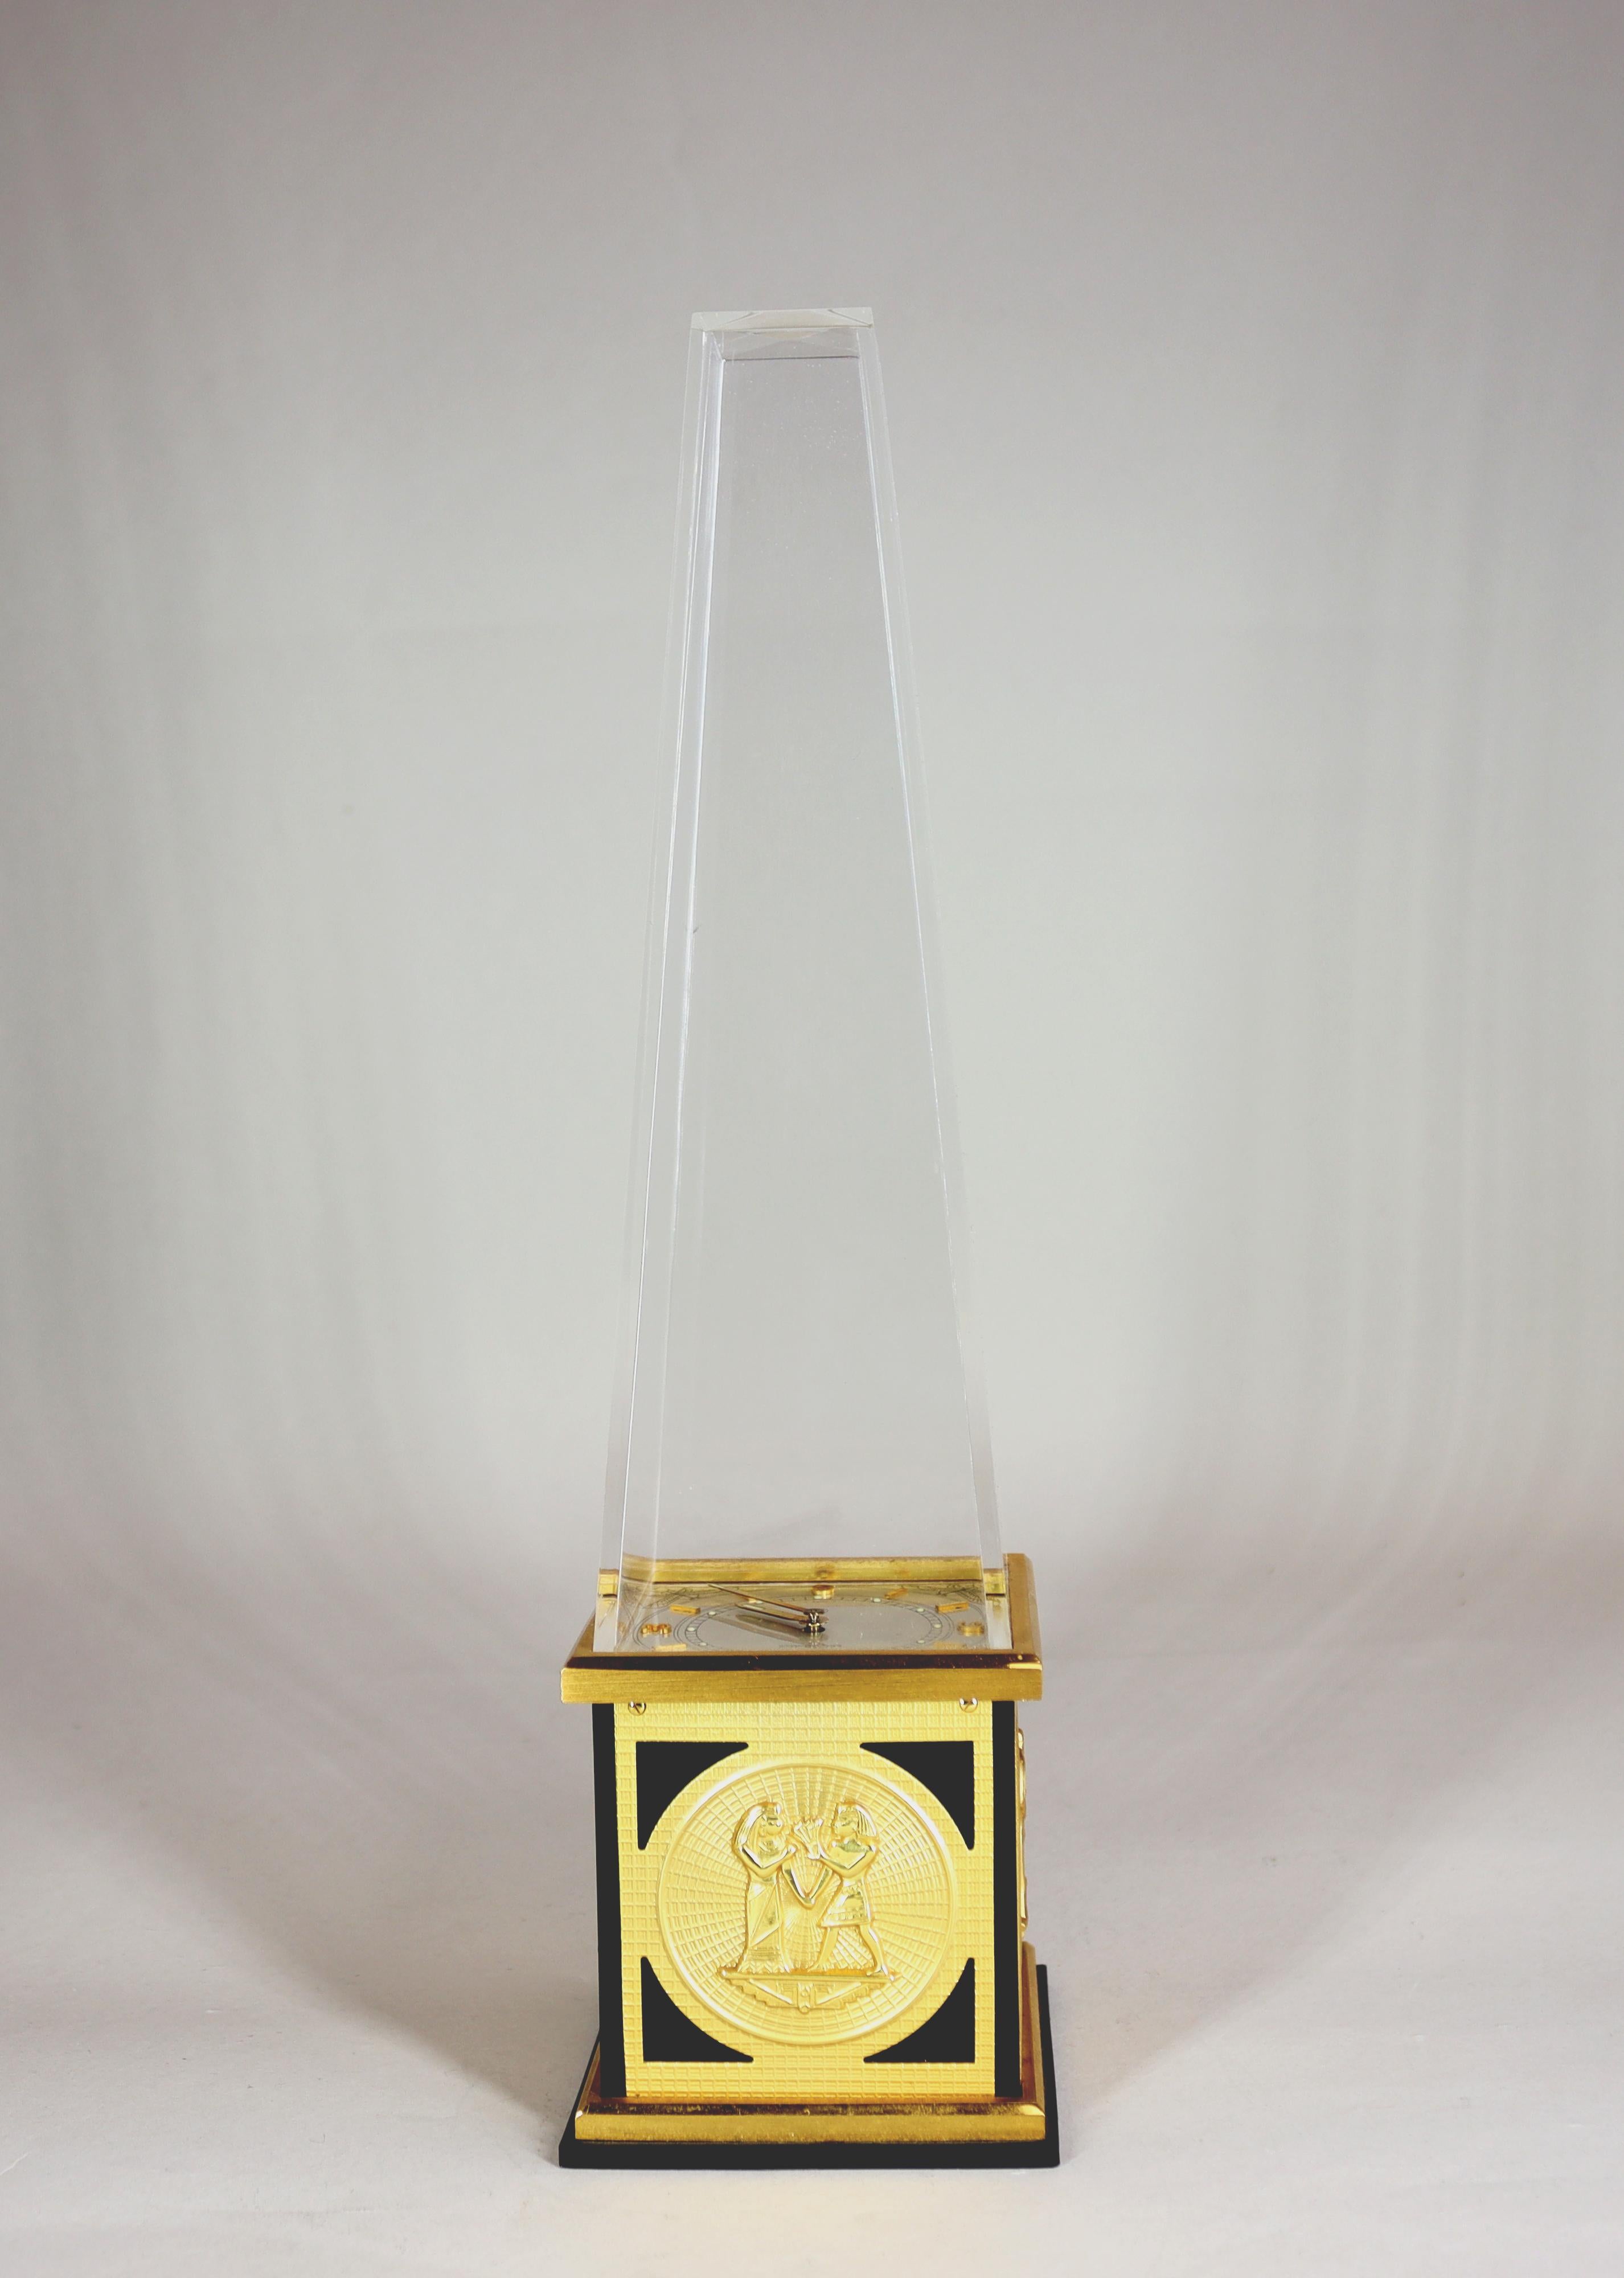 Eine Tischuhr in Form eines ägyptischen Obelisken von LeCoultre mit einem 8-Tage-Werk im Sockel, einem klaren versilberten Zifferblatt und vergoldeten Ziffern und Stabwerken unter einem Obelisken aus Plexiglas. Der schwarz lackierte Sockel ist mit